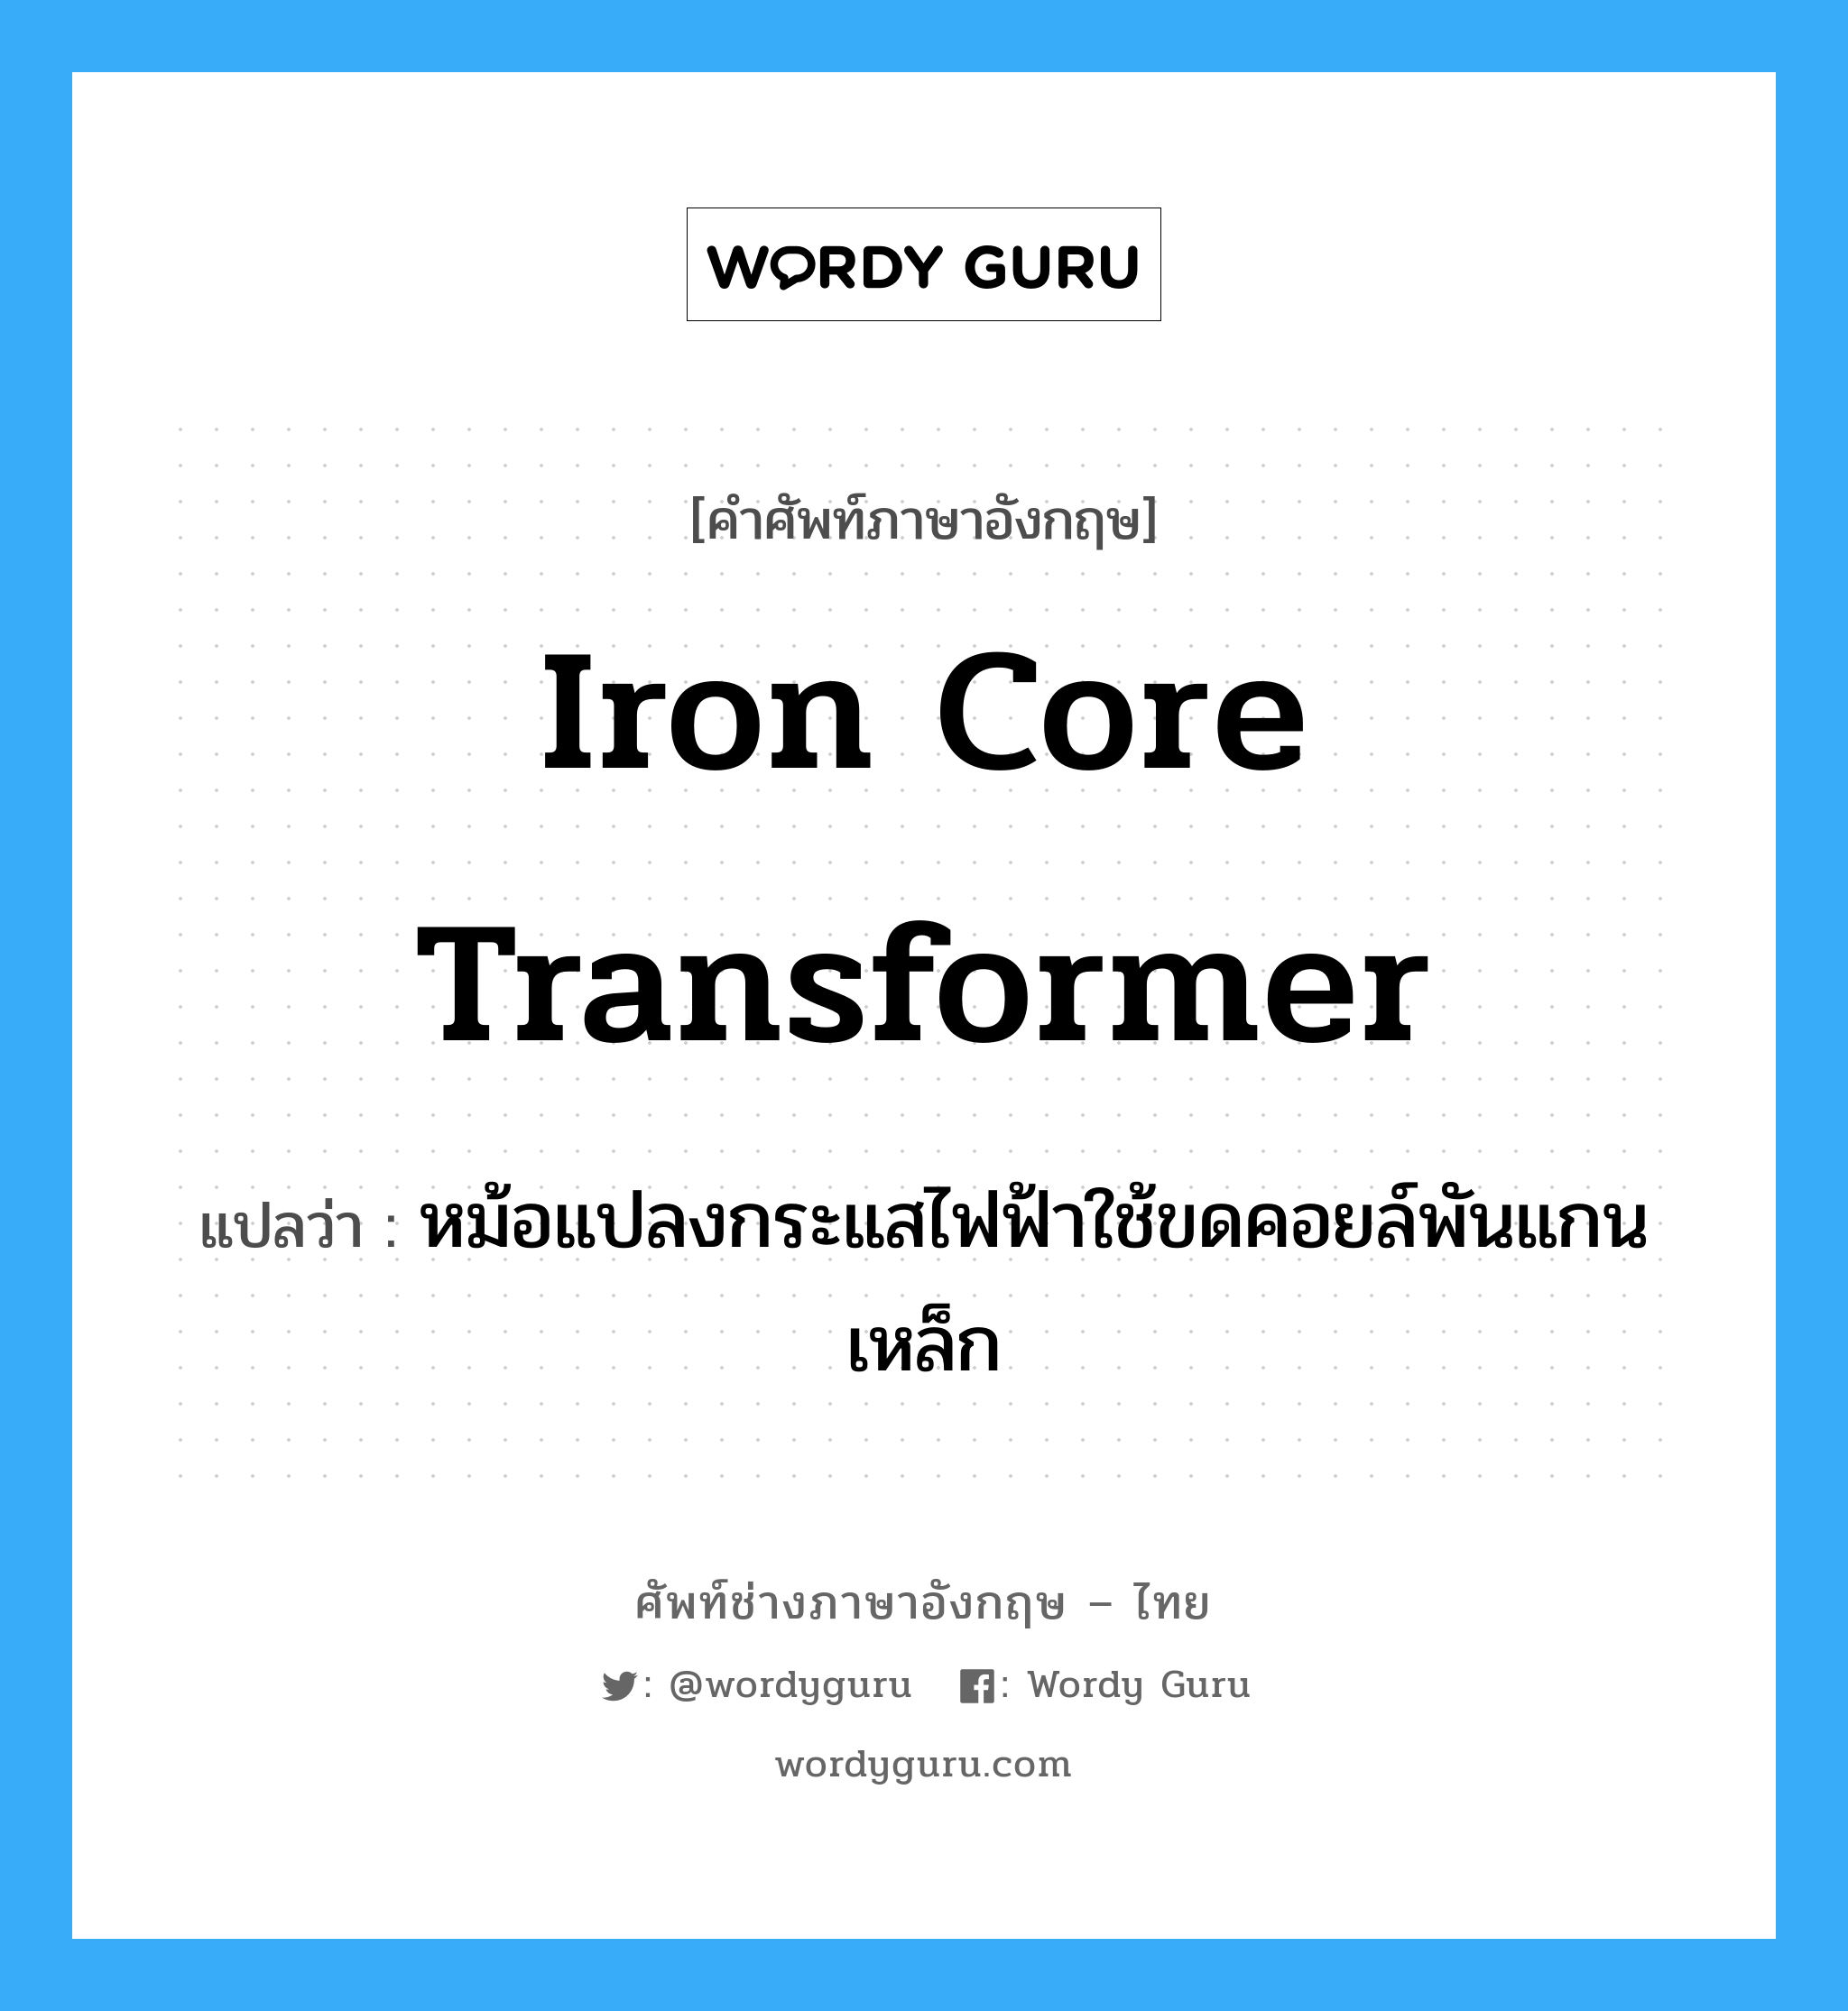 iron core transformer แปลว่า?, คำศัพท์ช่างภาษาอังกฤษ - ไทย iron core transformer คำศัพท์ภาษาอังกฤษ iron core transformer แปลว่า หม้อแปลงกระแสไฟฟ้าใช้ขดคอยล์พันแกนเหล็ก